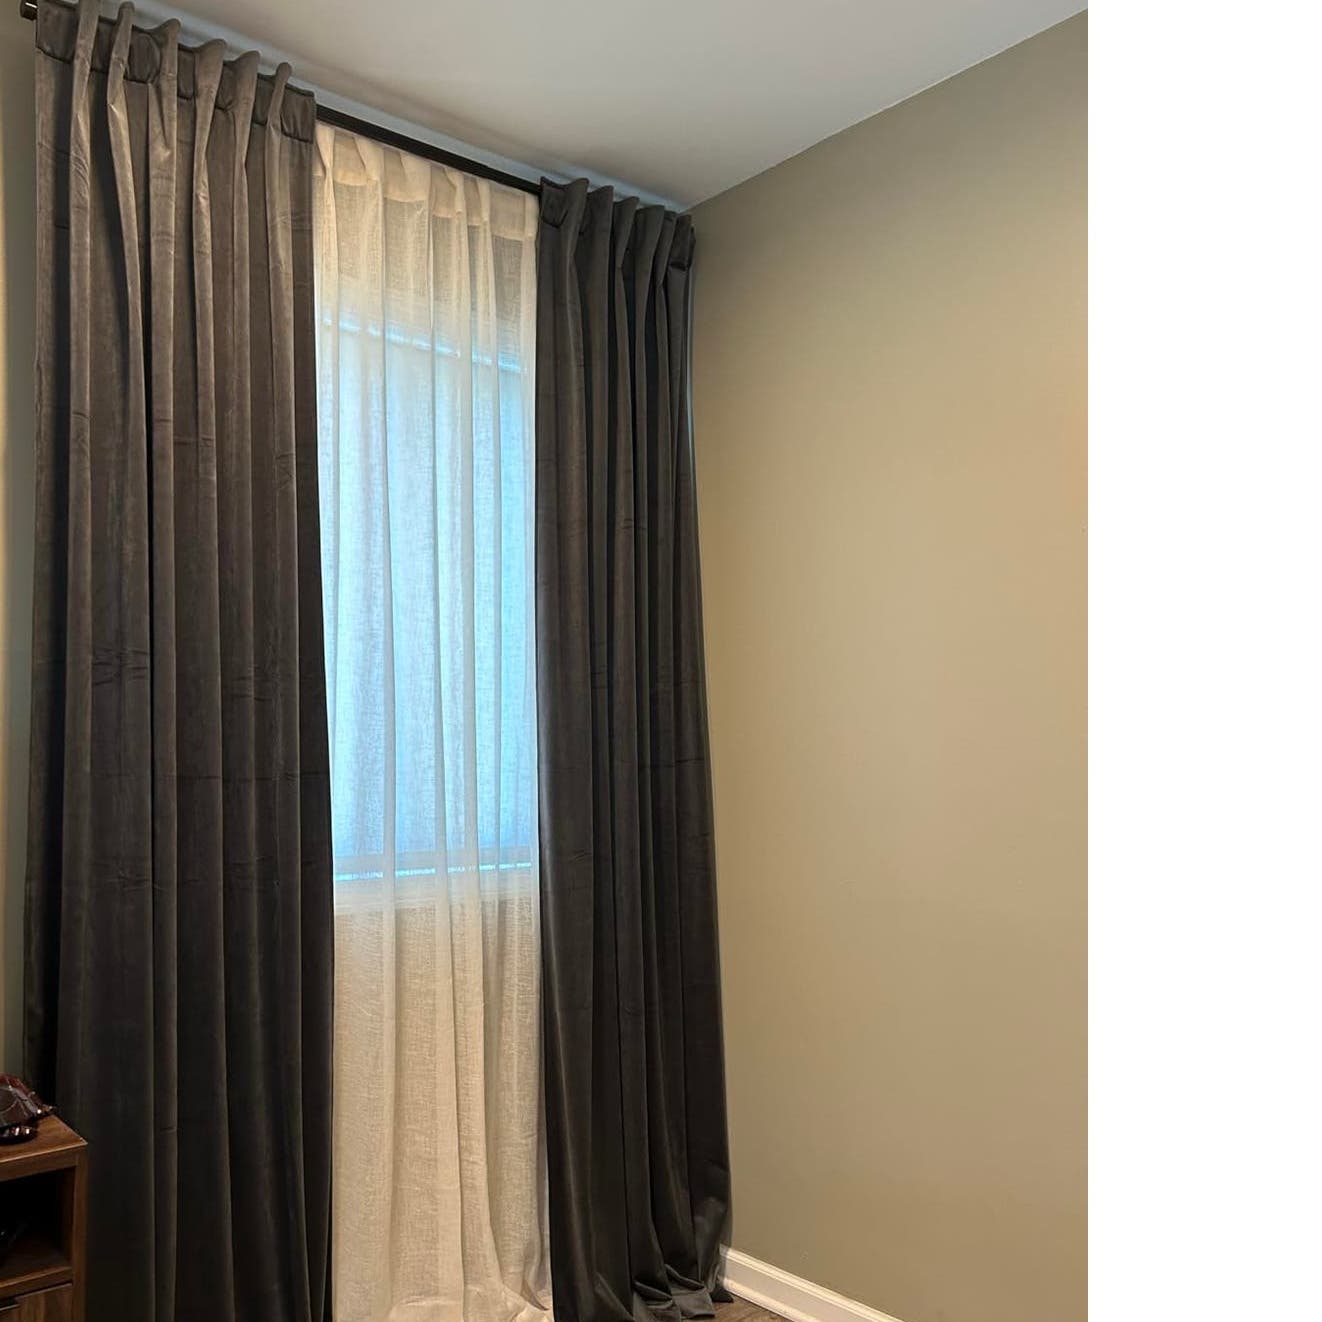 StangH Velvet Room Darkening Sound Reducing Curtains, Grey, W52 x L90, 2 Panels